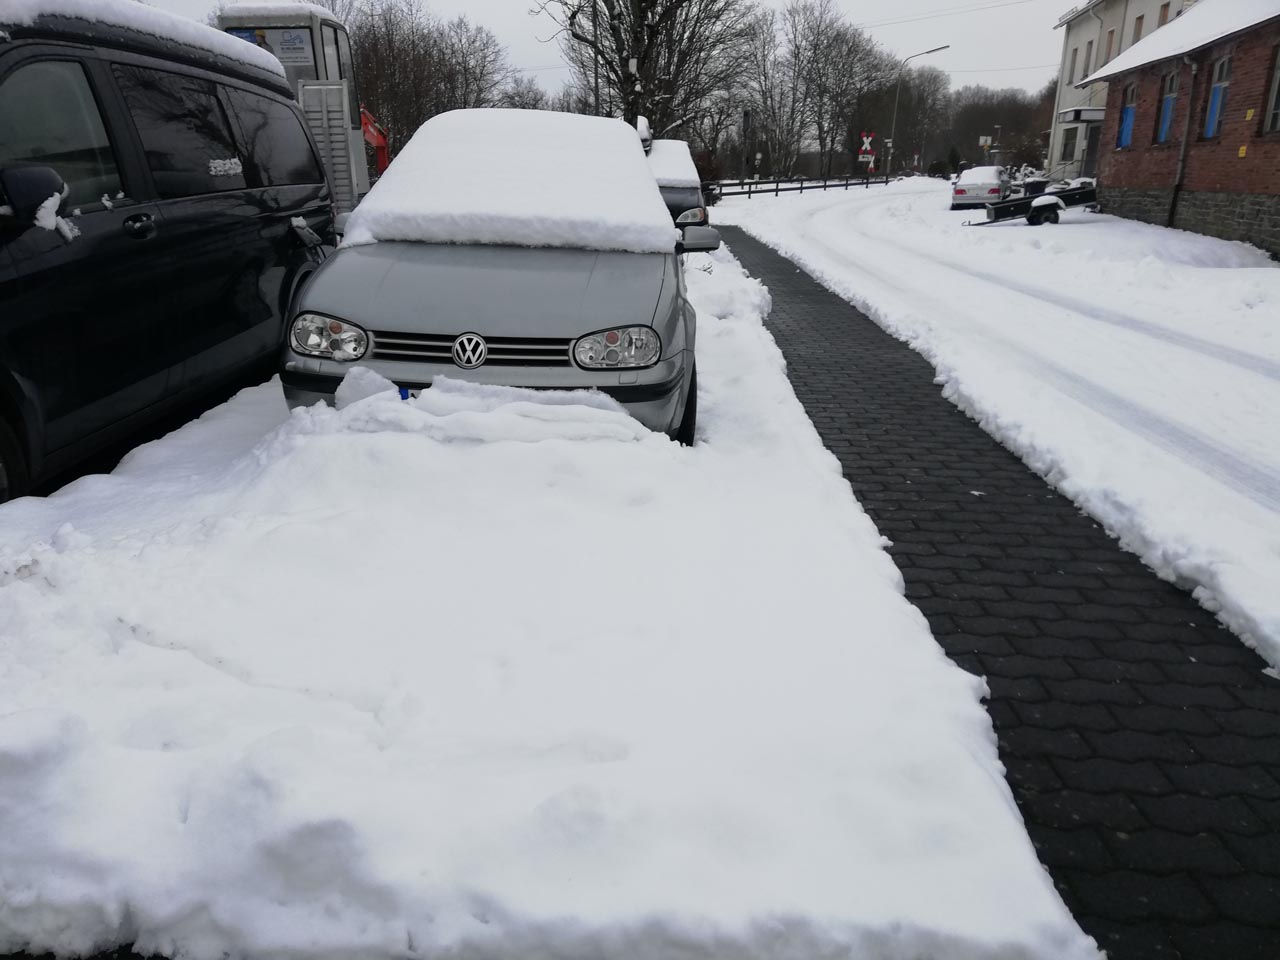 Parken im Winter: Wenn das geparkte Auto eingeschneit wird